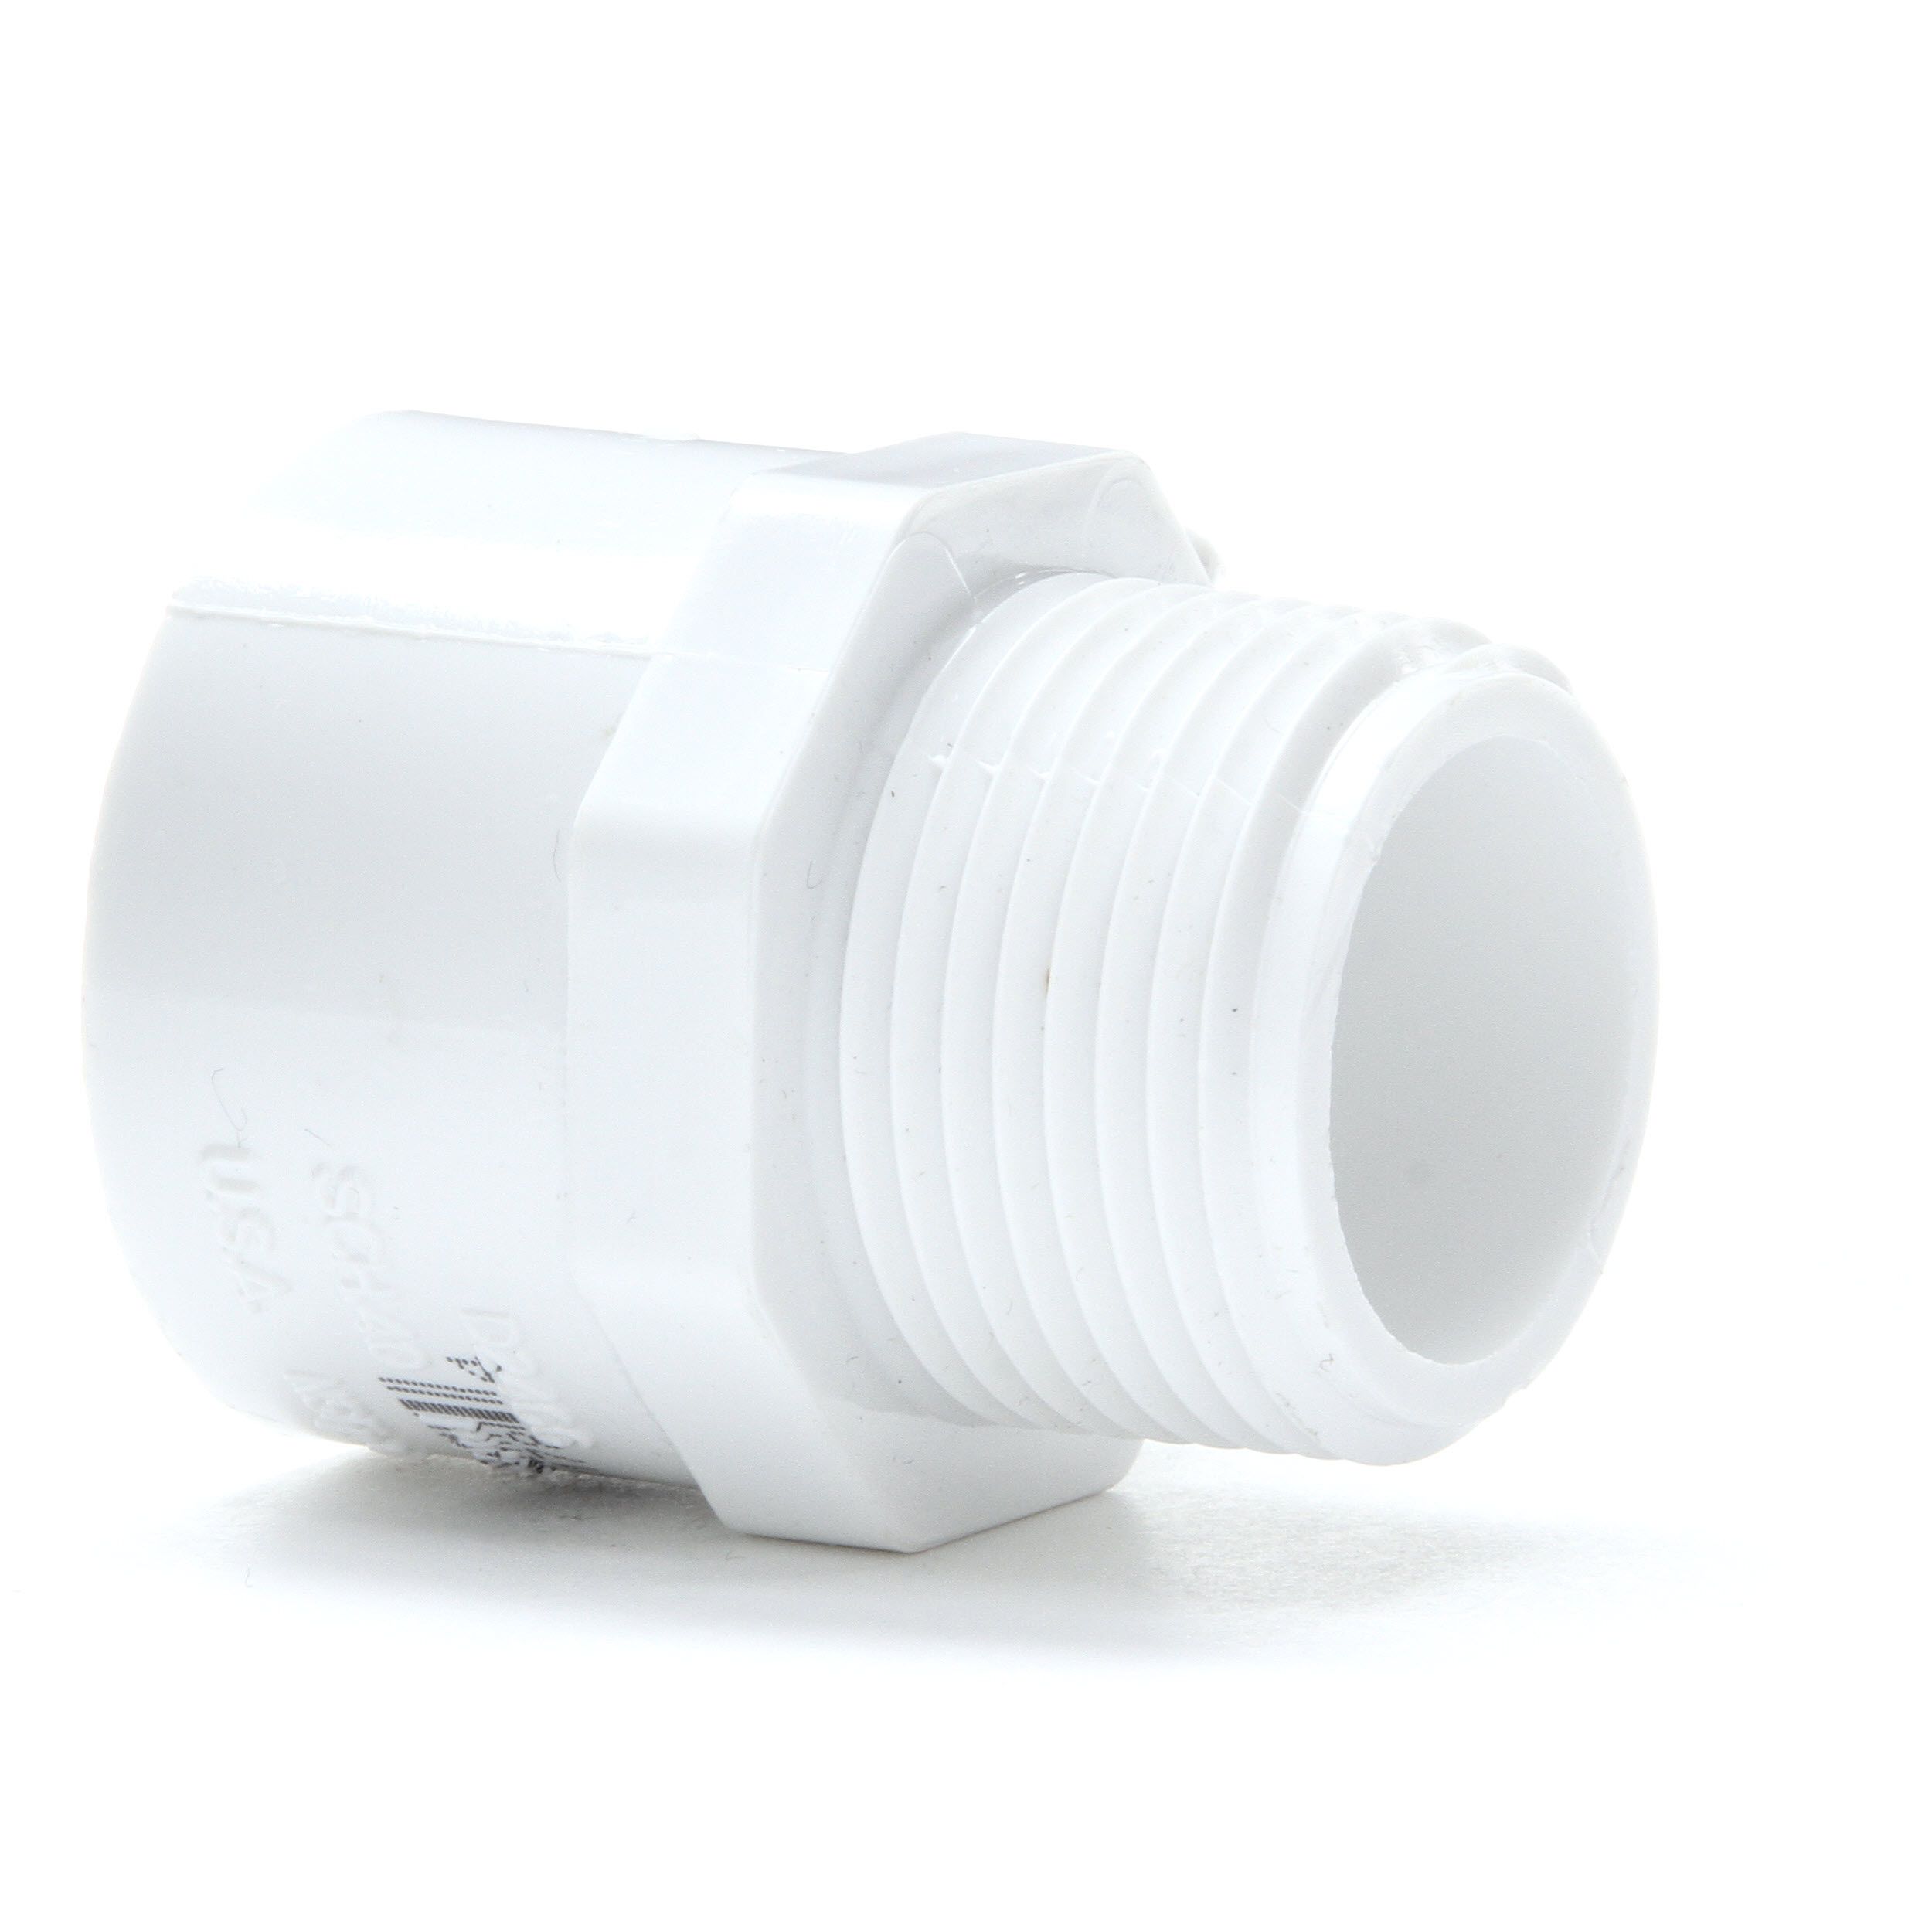 LASCO 1 In PVC Male Adapter Insert X MNPT Model 1436010rmc for sale online 